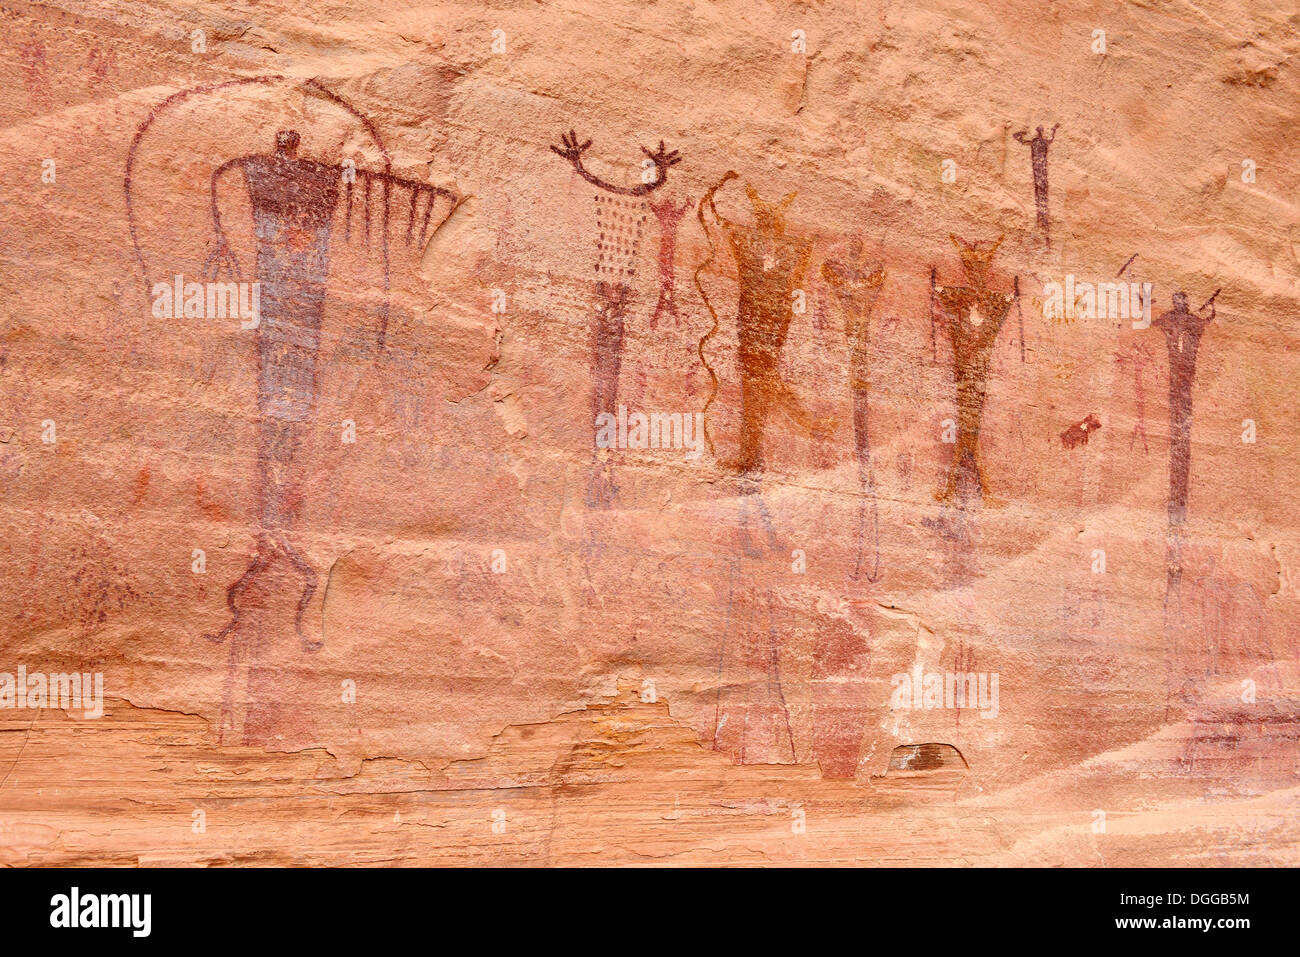 Indianische Felszeichnungen, Buckhorn zeichnen Petroglyphen, San Rafael Swell, Utah, USA, Nordamerika Stockfoto